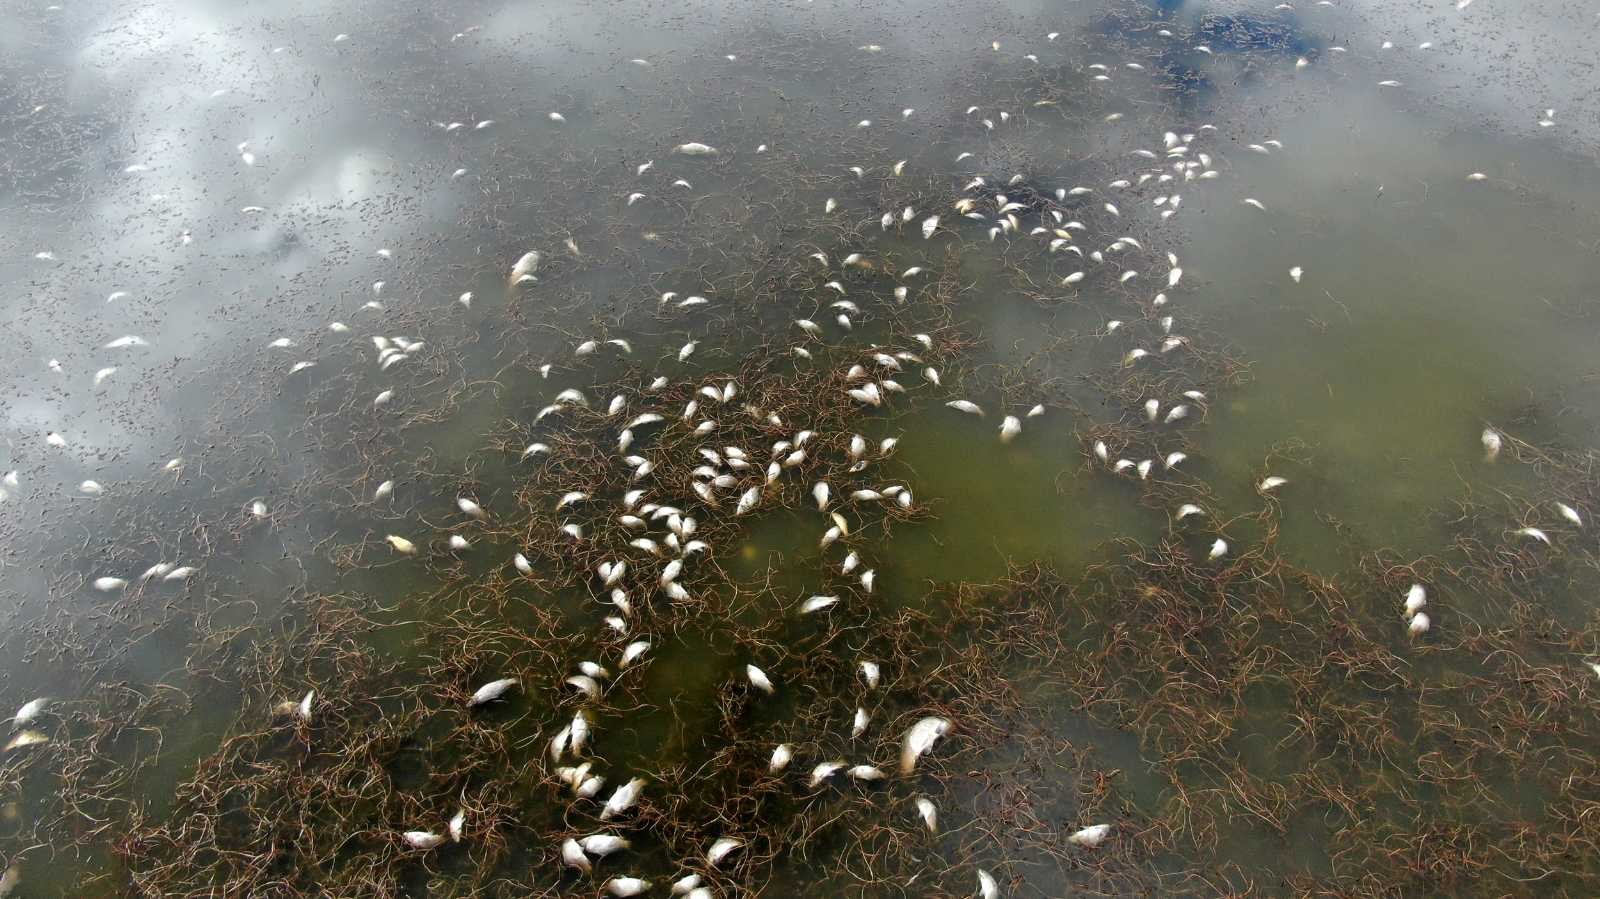 Korkutan çevre felaketi, gölün kıyısı ölü balıklarla doldu #sivas